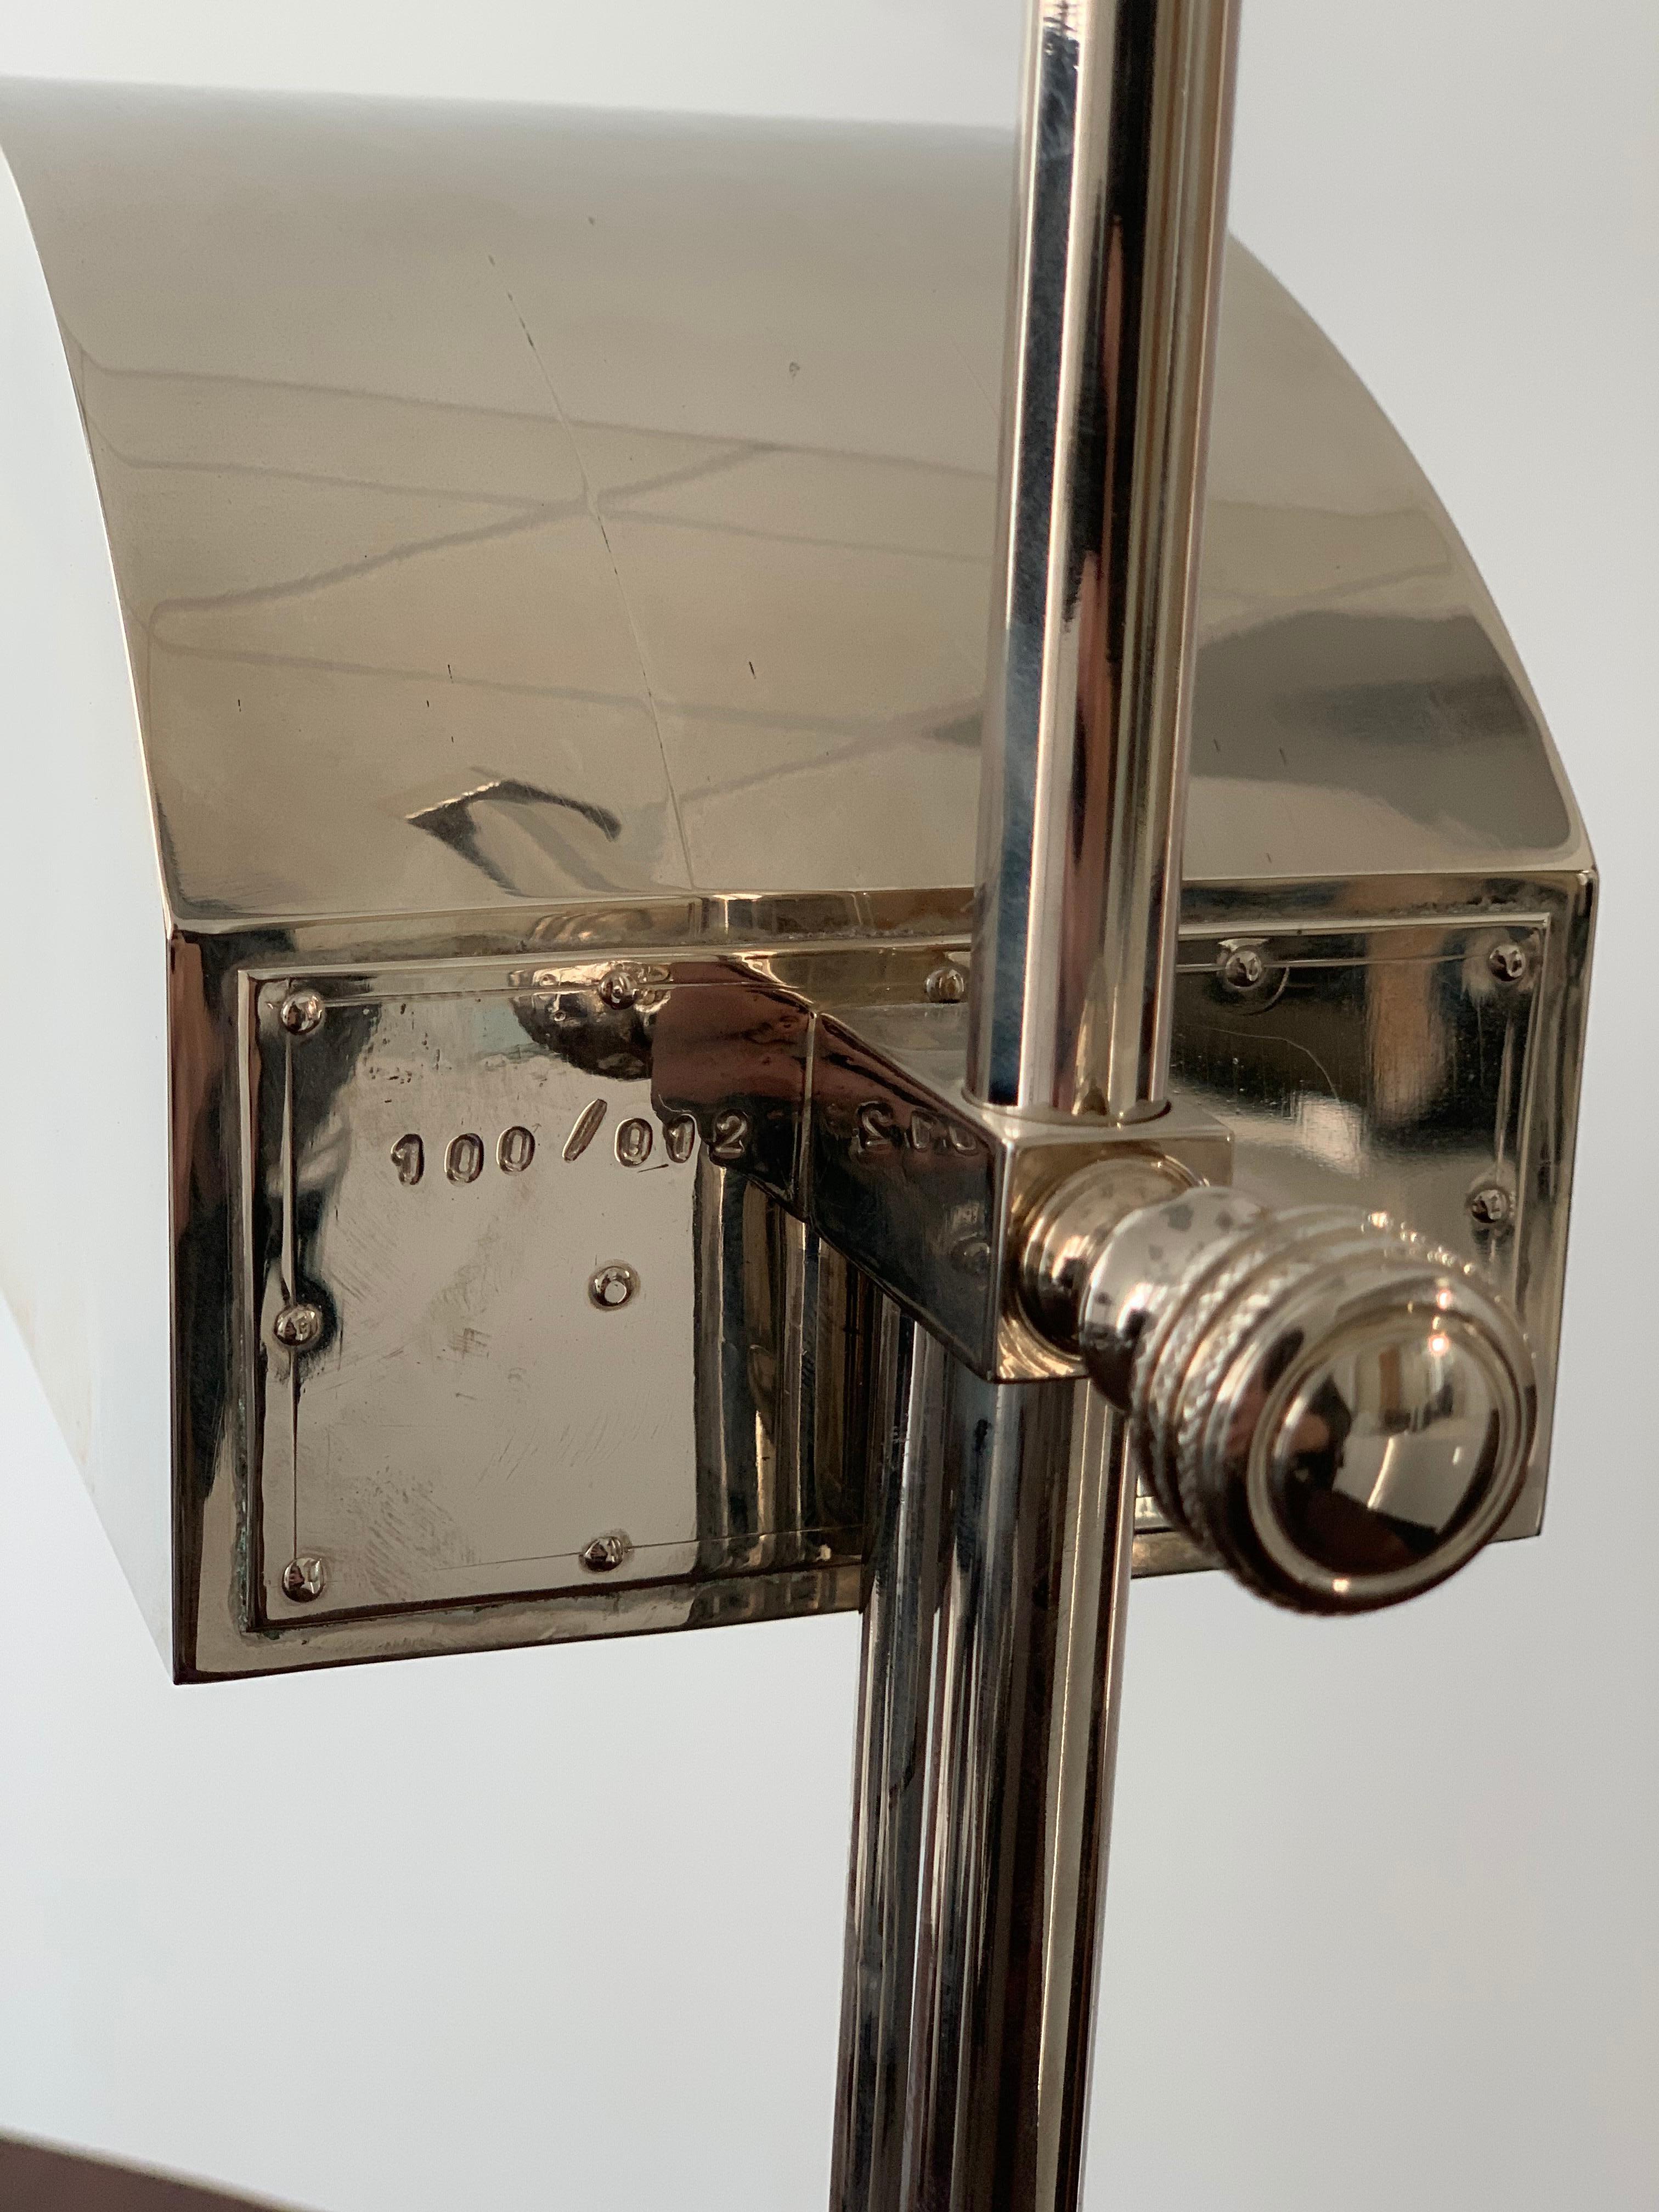 Brass Bauhaus Marcel Breuer Lamps circa 1925 Engraved 100/12 + 100/31 Table/Desk Light